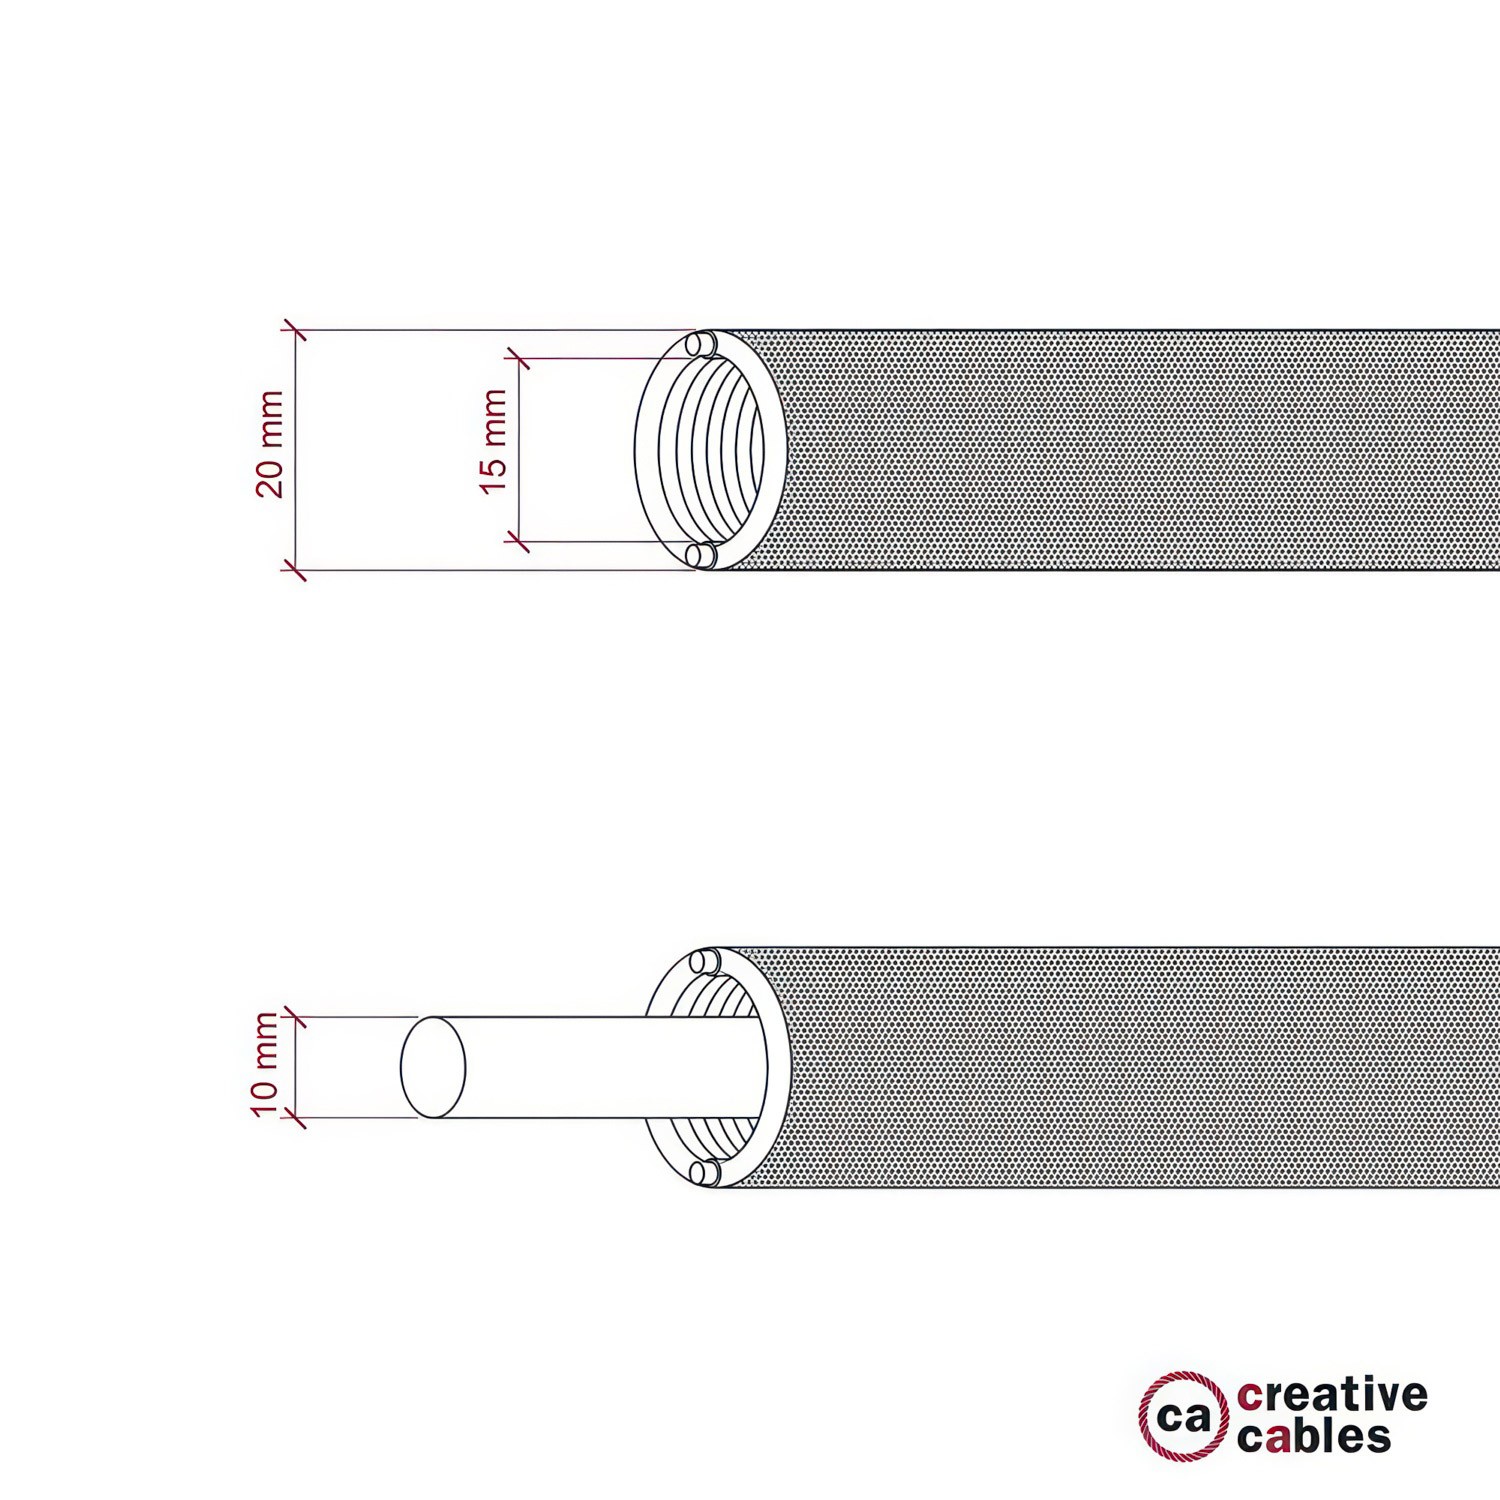 Tubo Flexivel Creative-Tube, coberto por tecidoLinho Natural Cinzento RN02, diametro 20 mm